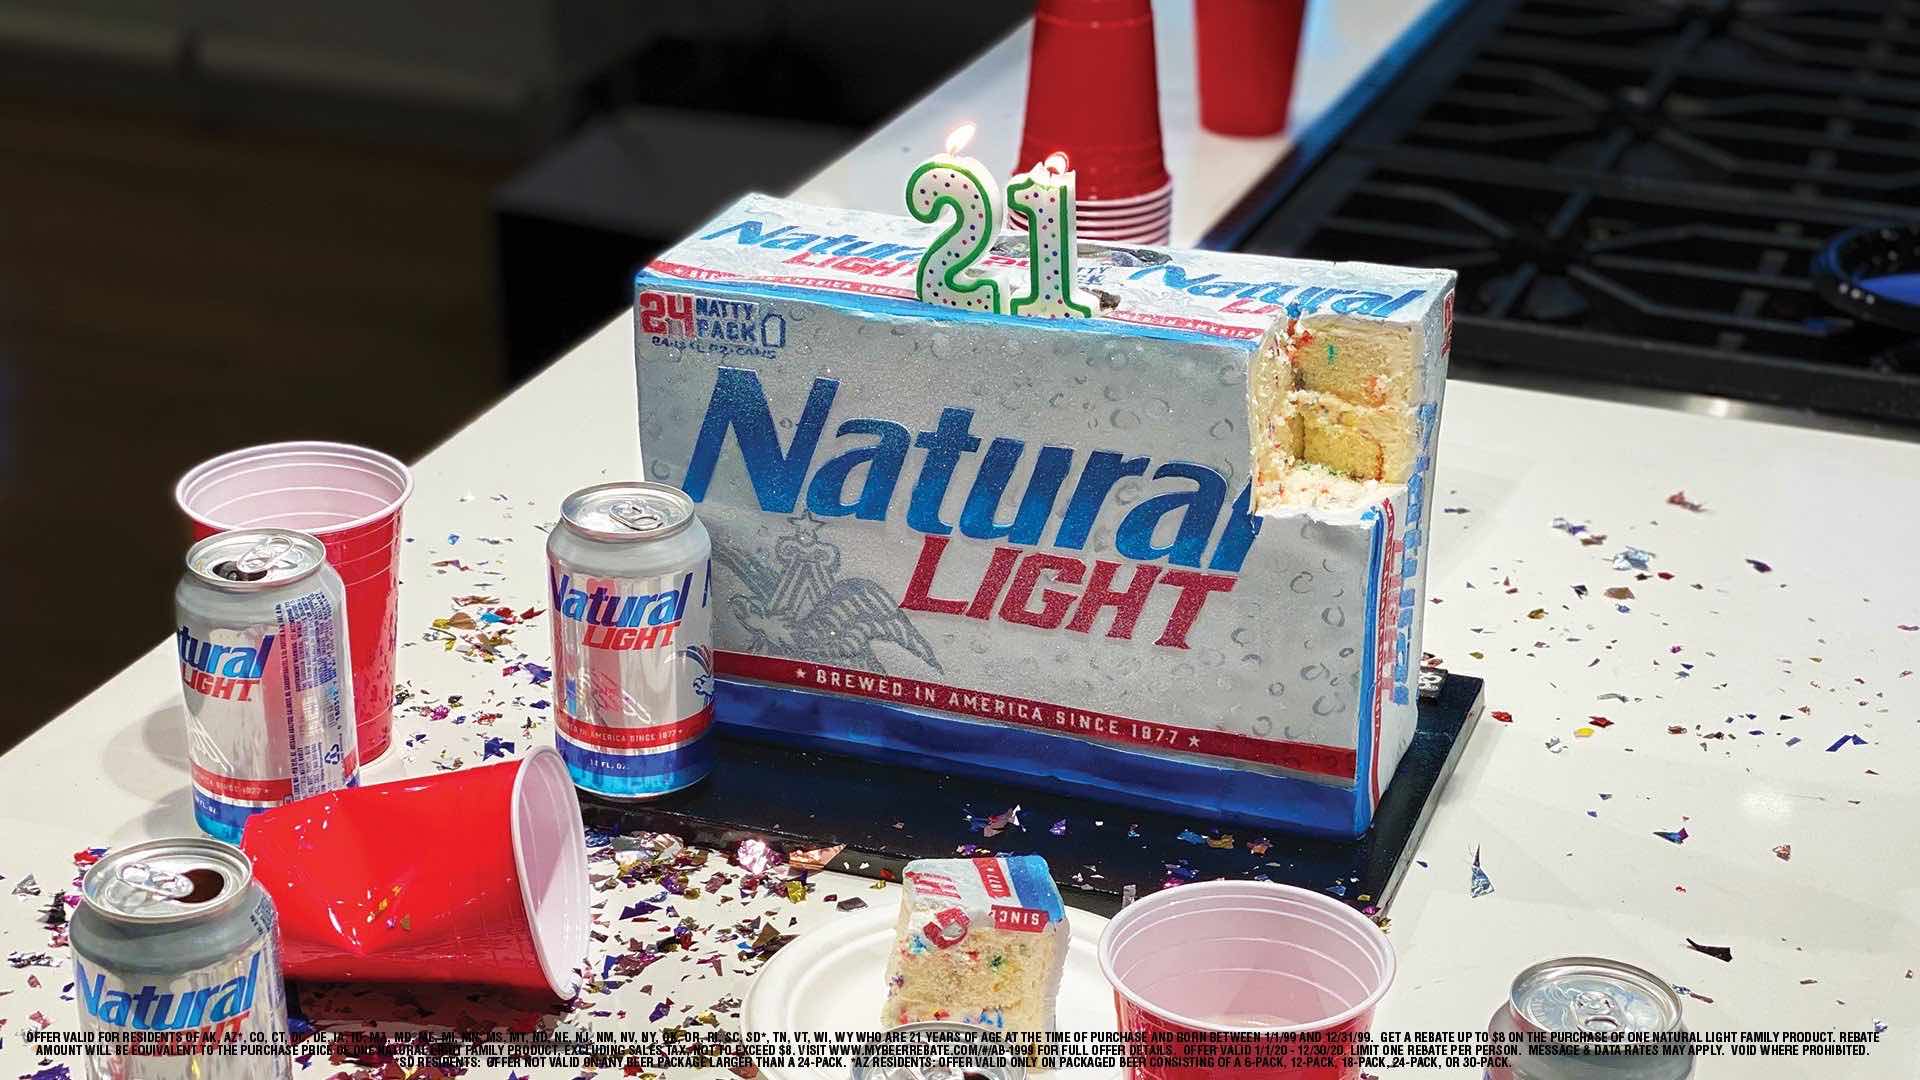 Natural Light trakteert Amerikanen die 21 worden op een pint (Focalys)